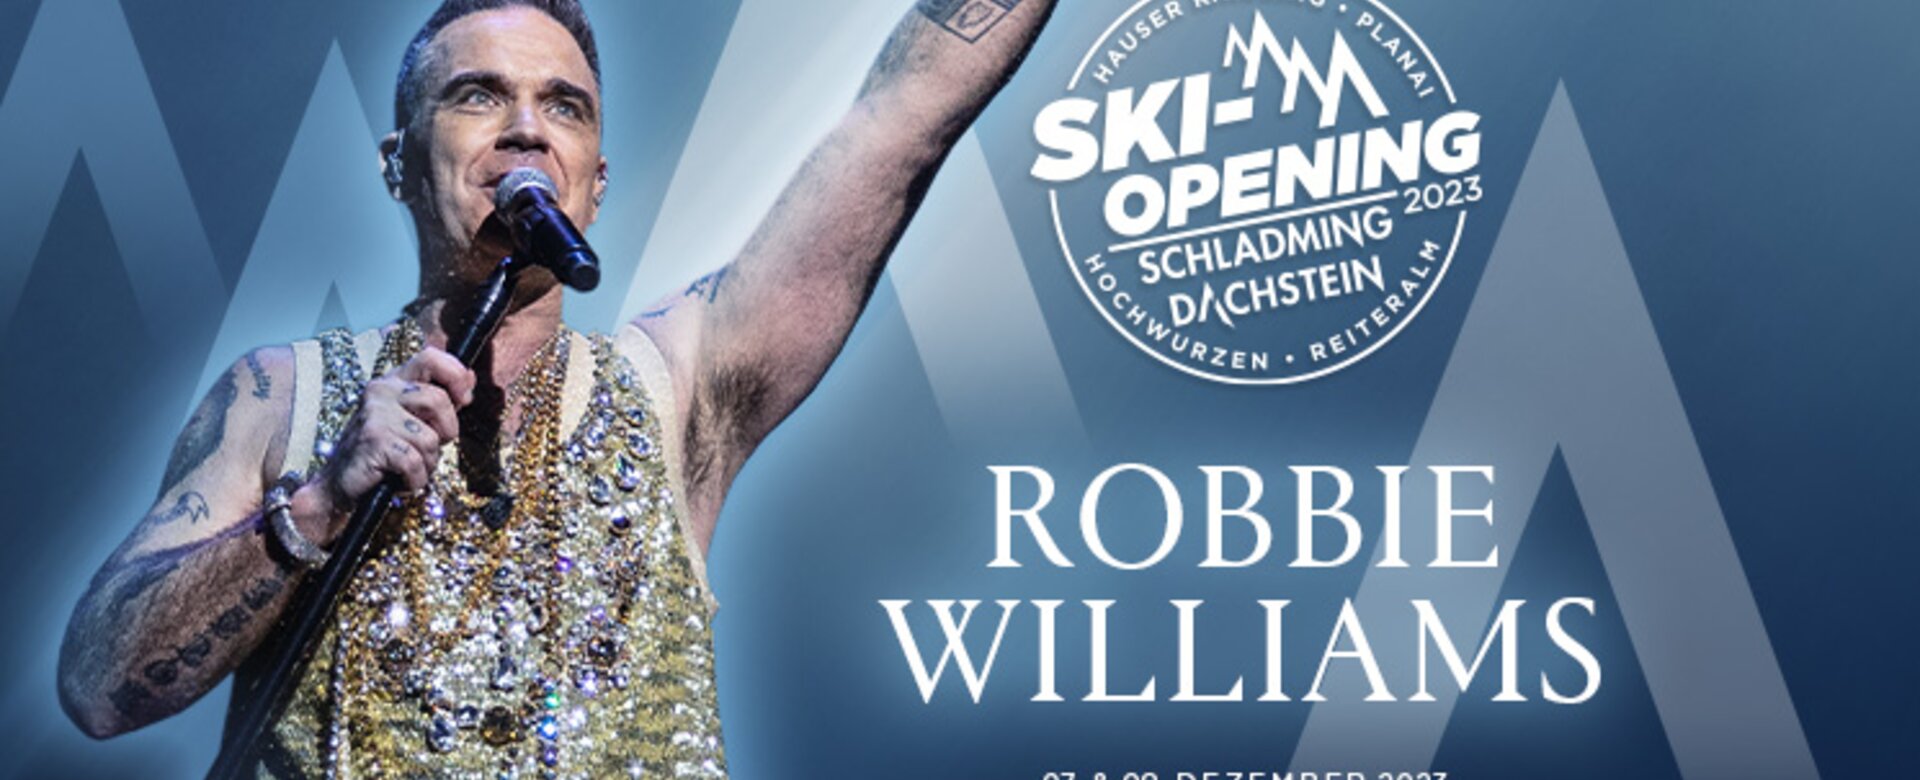 Robbie Williams kommt am 7. und 8. Dezember 2023 zum Ski-Opening nach Schladming-Dachstein. 